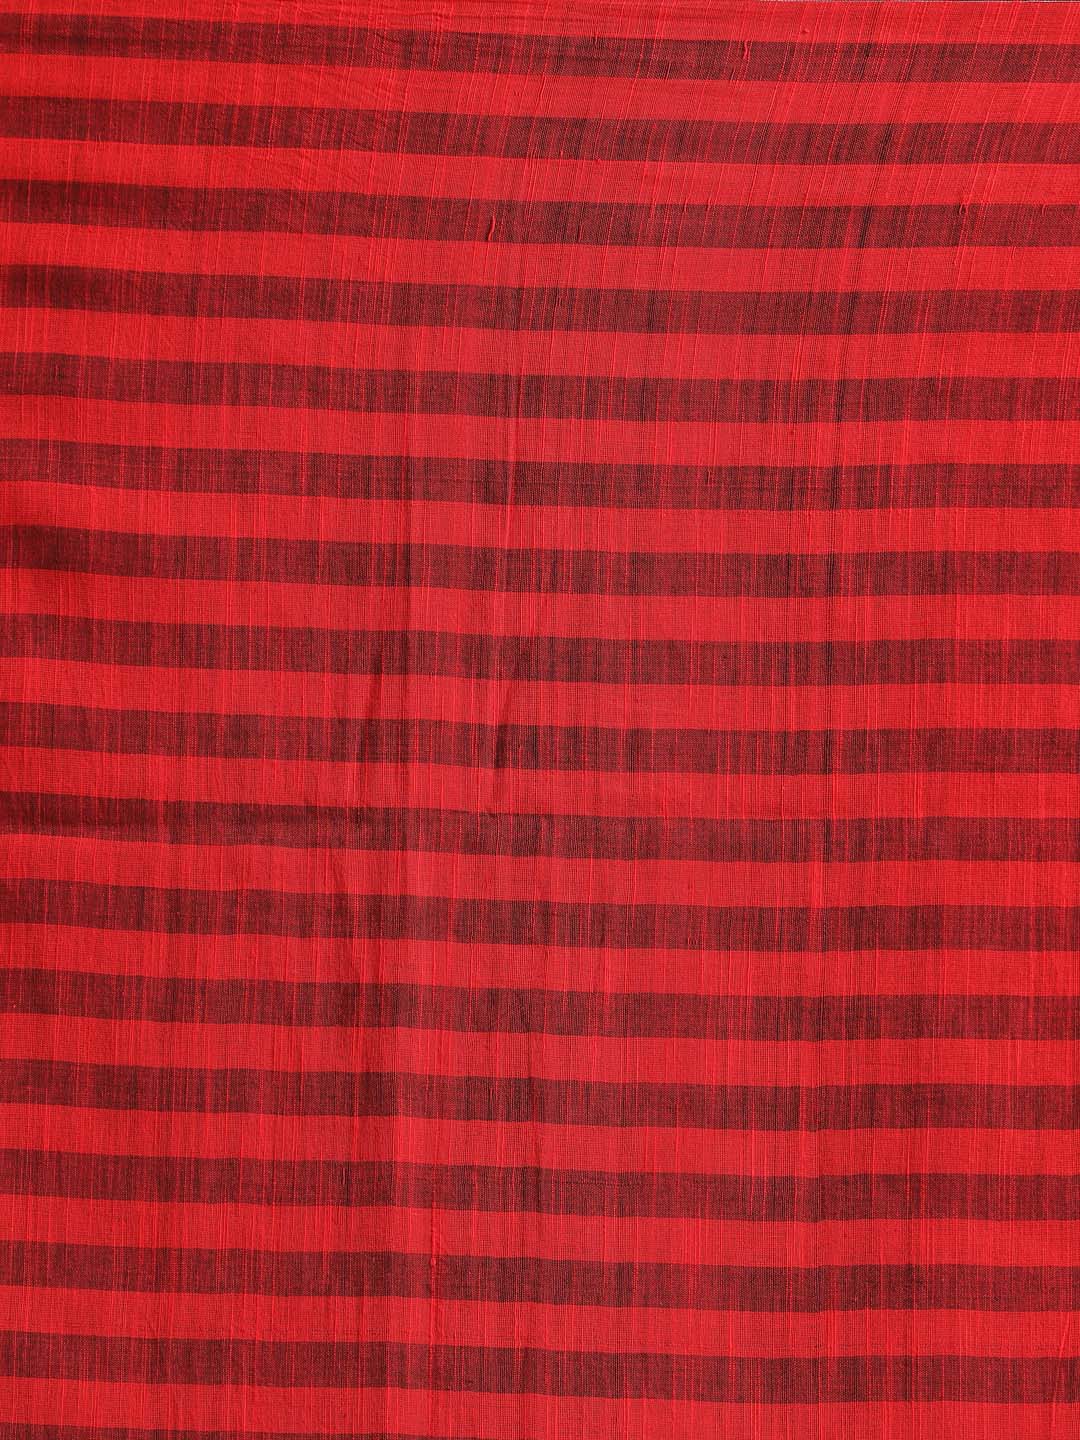 Indethnic Red Bengal Handloom Pure Cotton Saree Work Saree - Saree Detail View